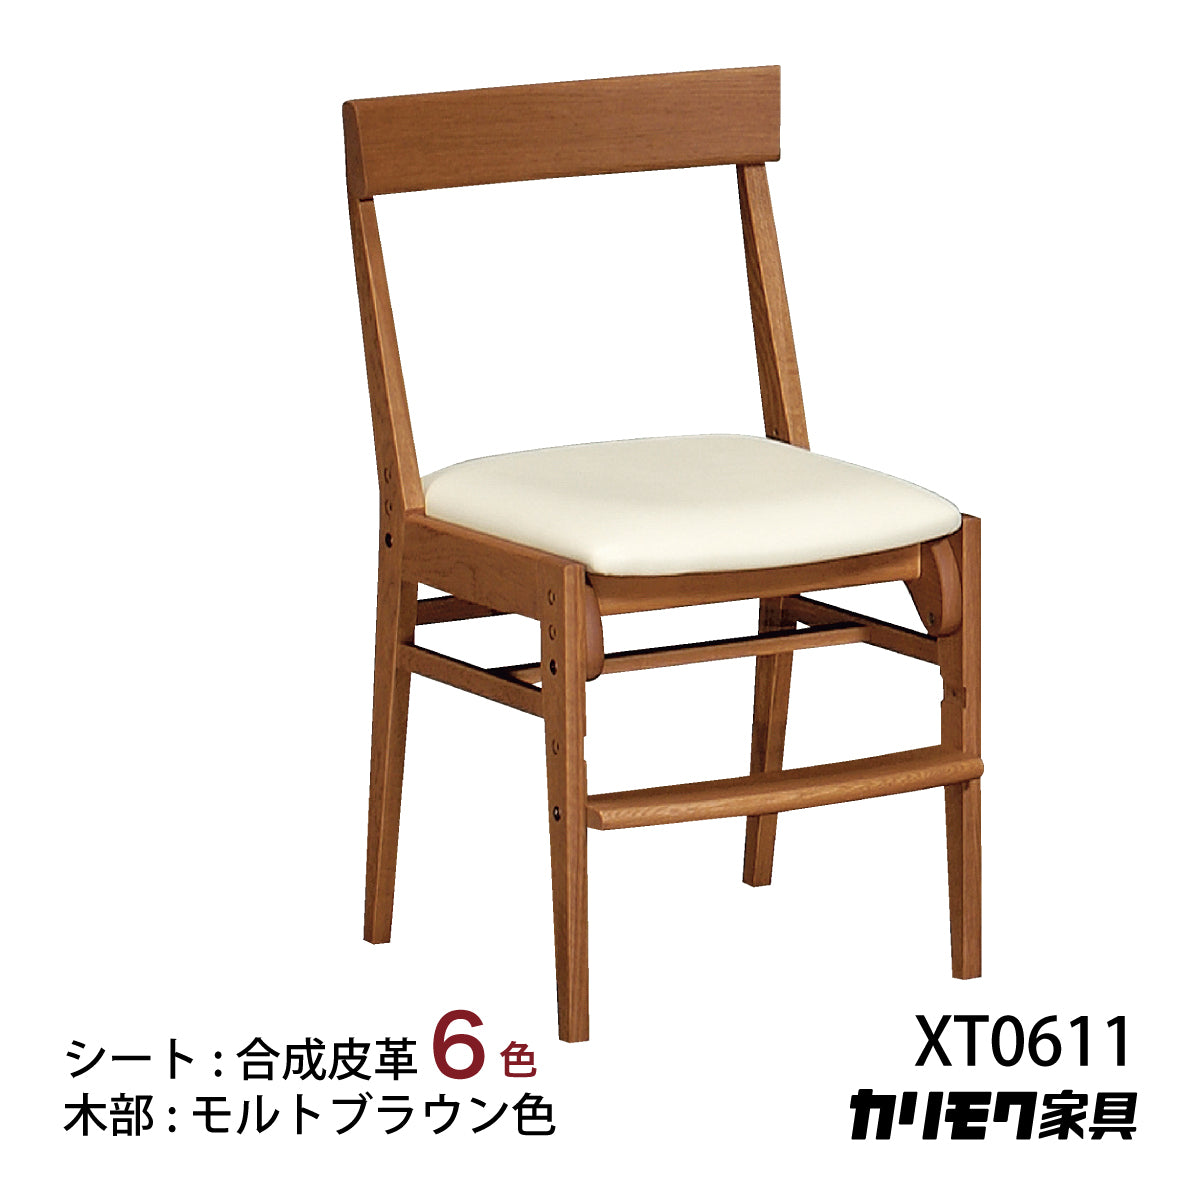 カリモク 学習椅子 XT0611 モルトブラウン色 デスクチェア 子供椅子 